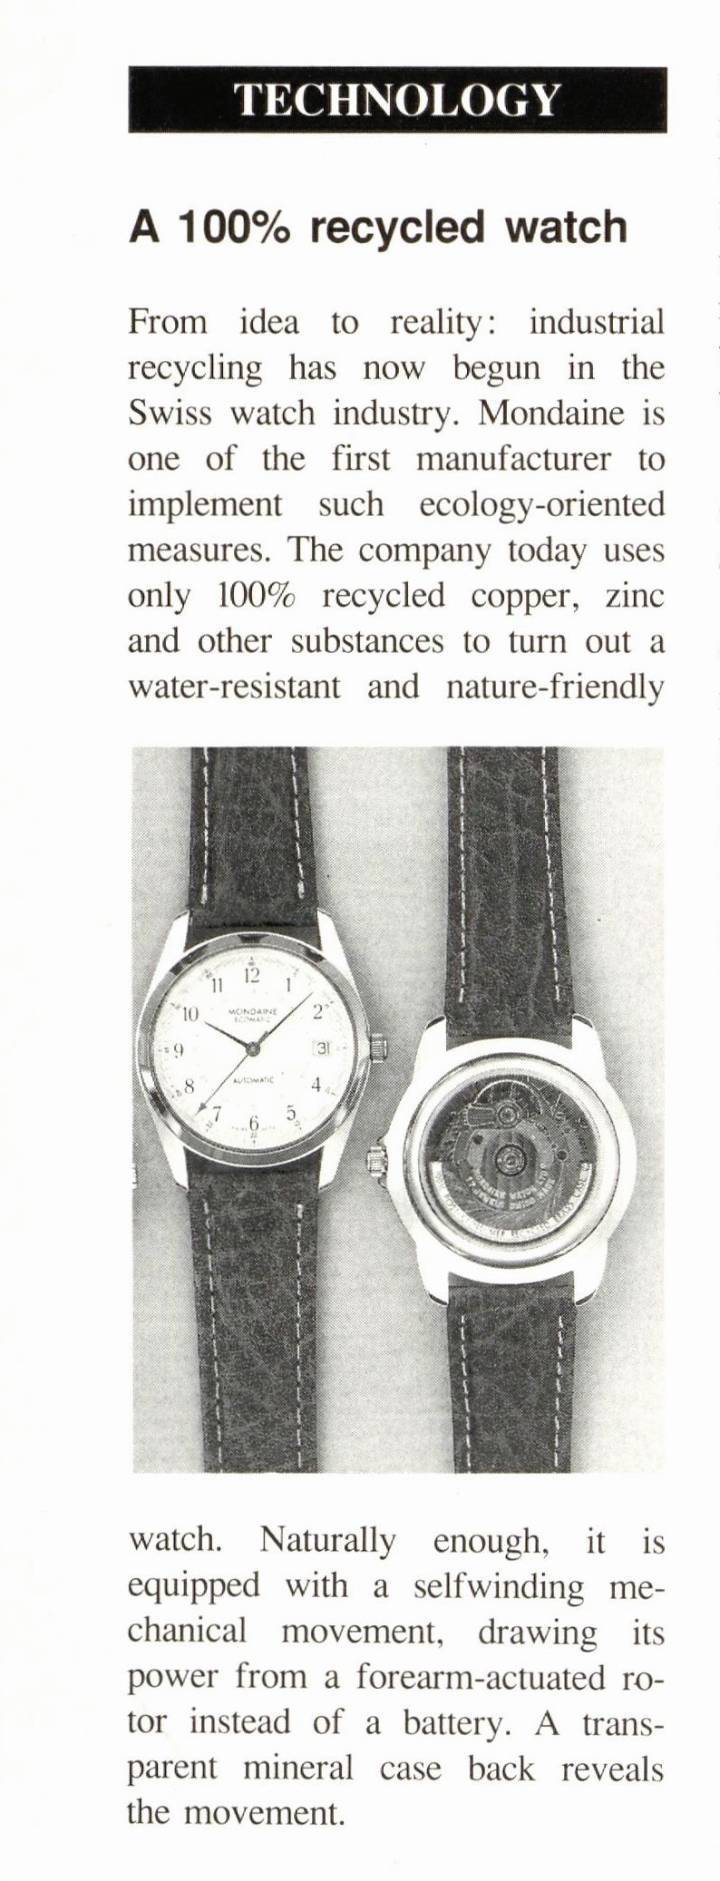 Un article paru en 1992 dans Europa Star sur la montre recyclée de Mondaine, à une époque où cette question n'était pas encore très répandue.